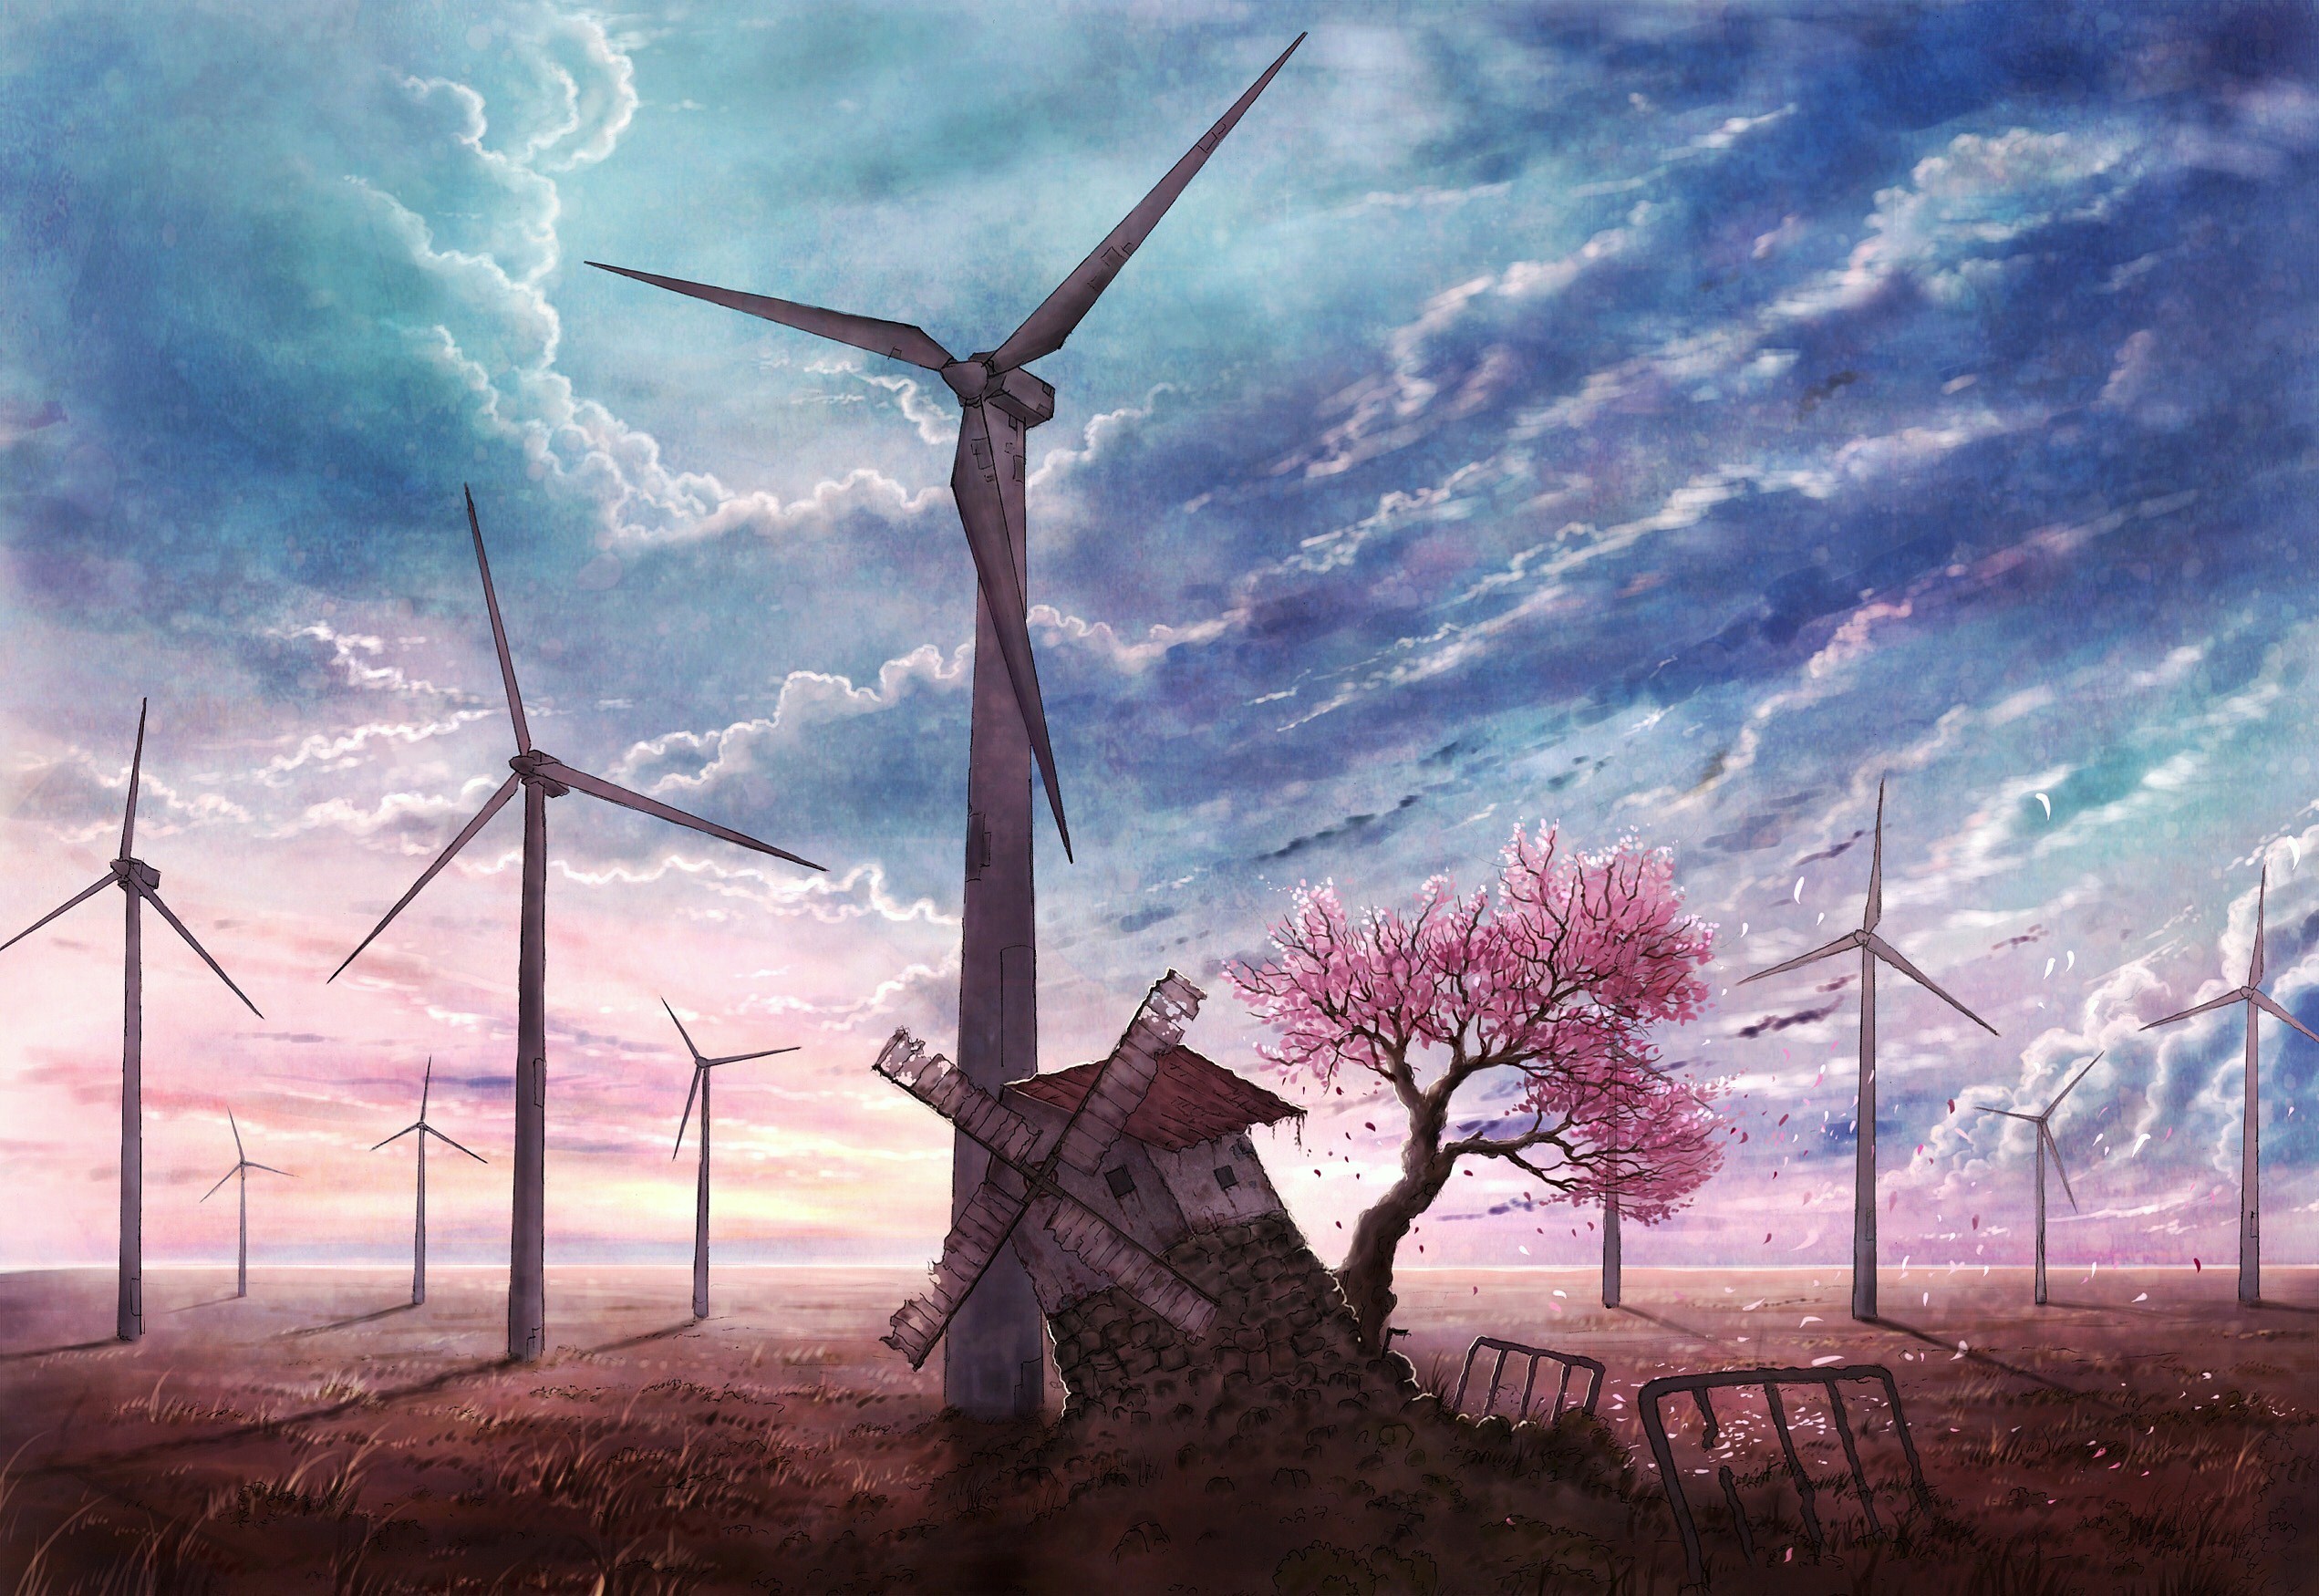 Windmill Clouds Artwork C O L A 2543x1750